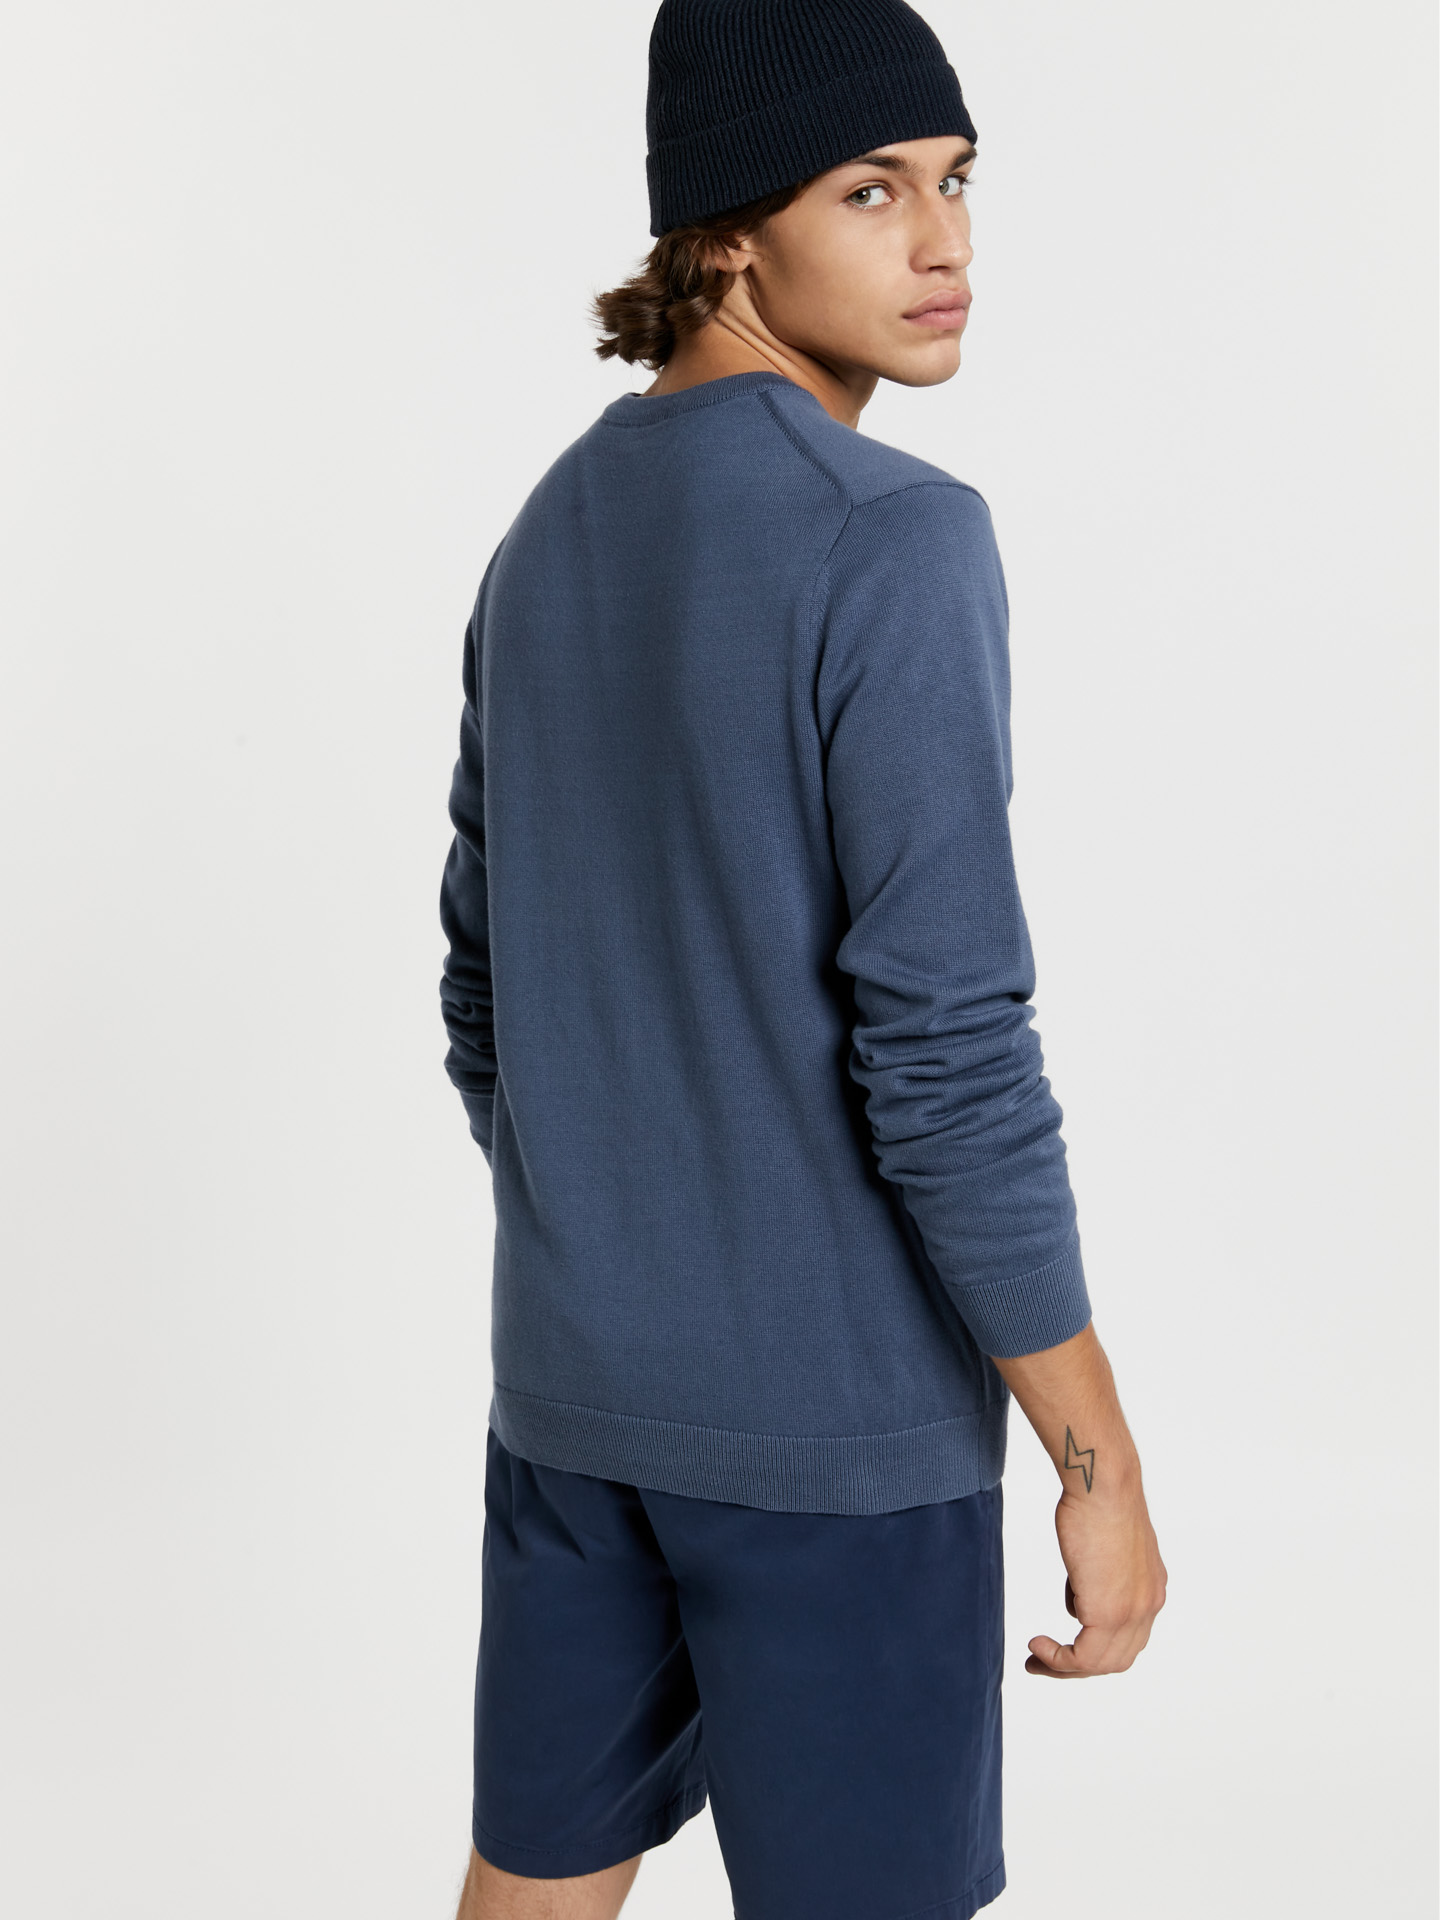 Sweater Medium Blue Casual Man